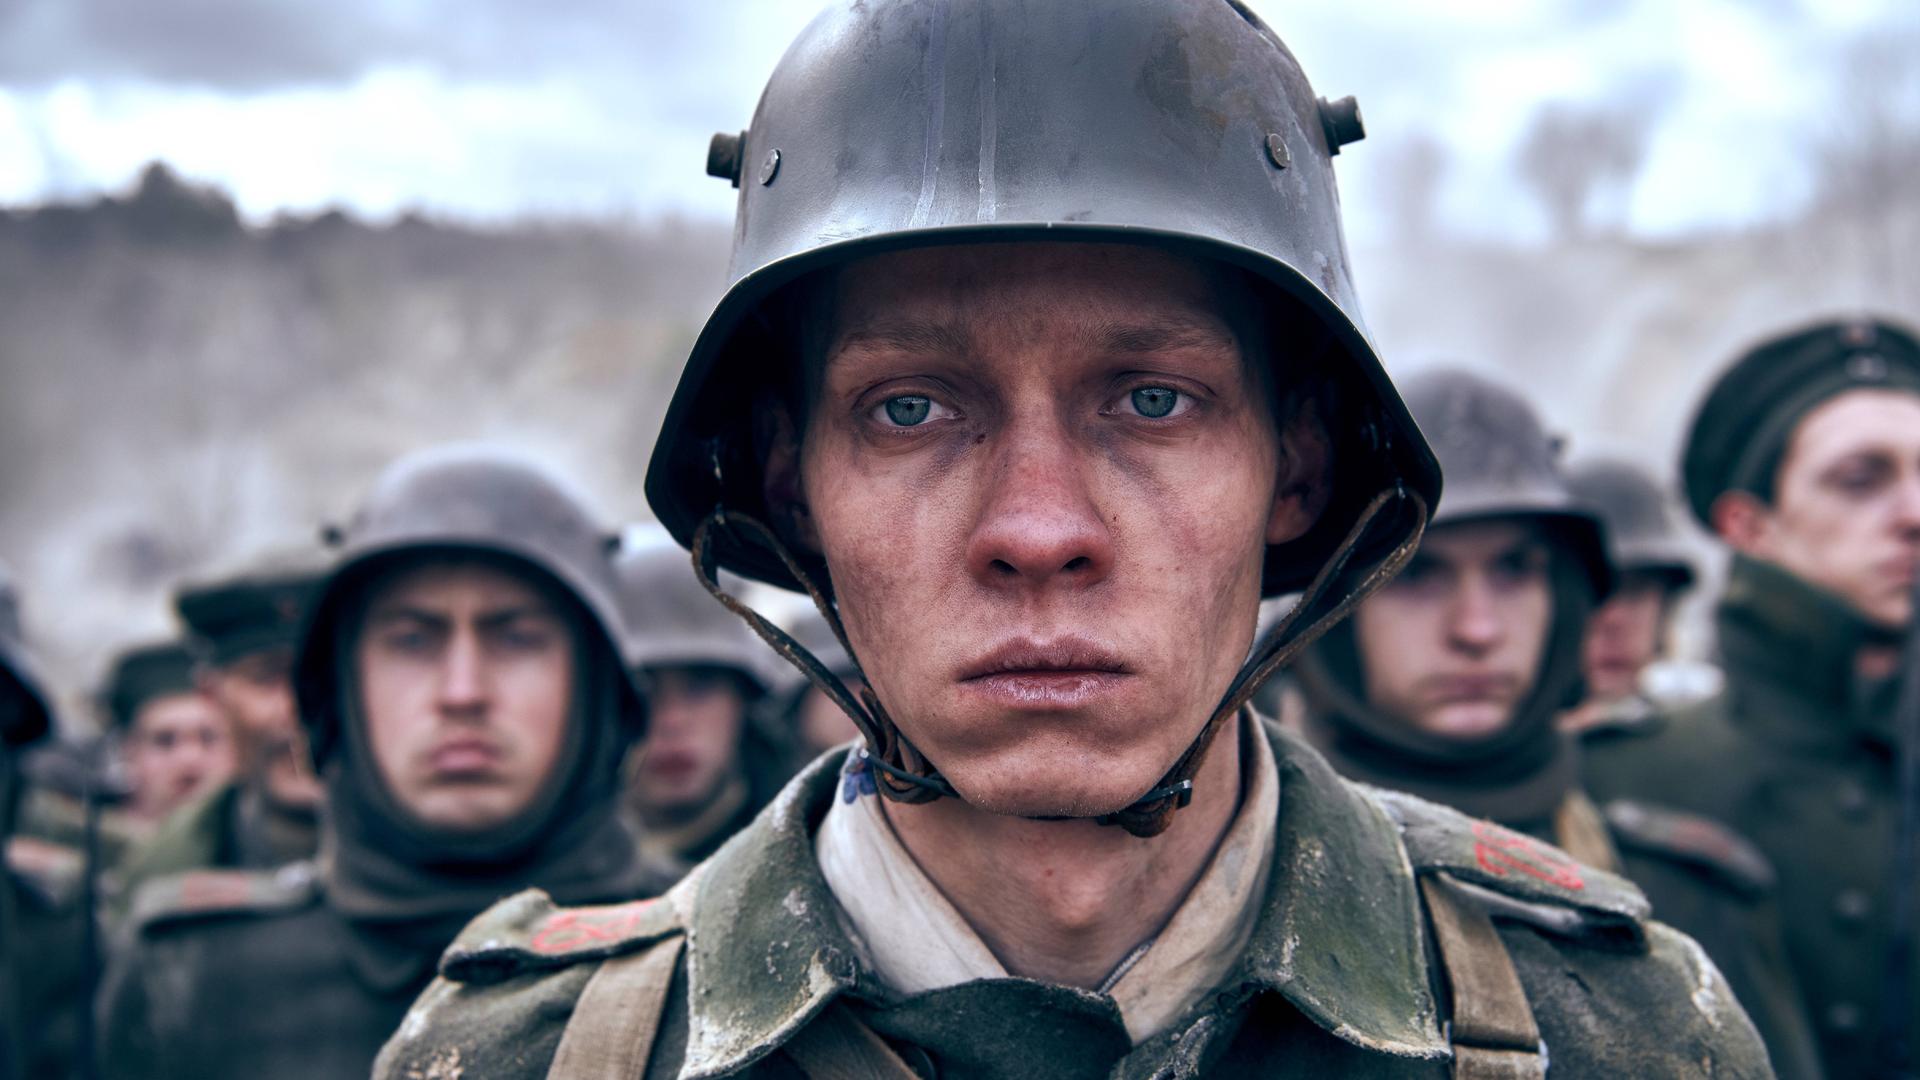 Ein Soldat mit Helm schaut traurig in die Kamera.